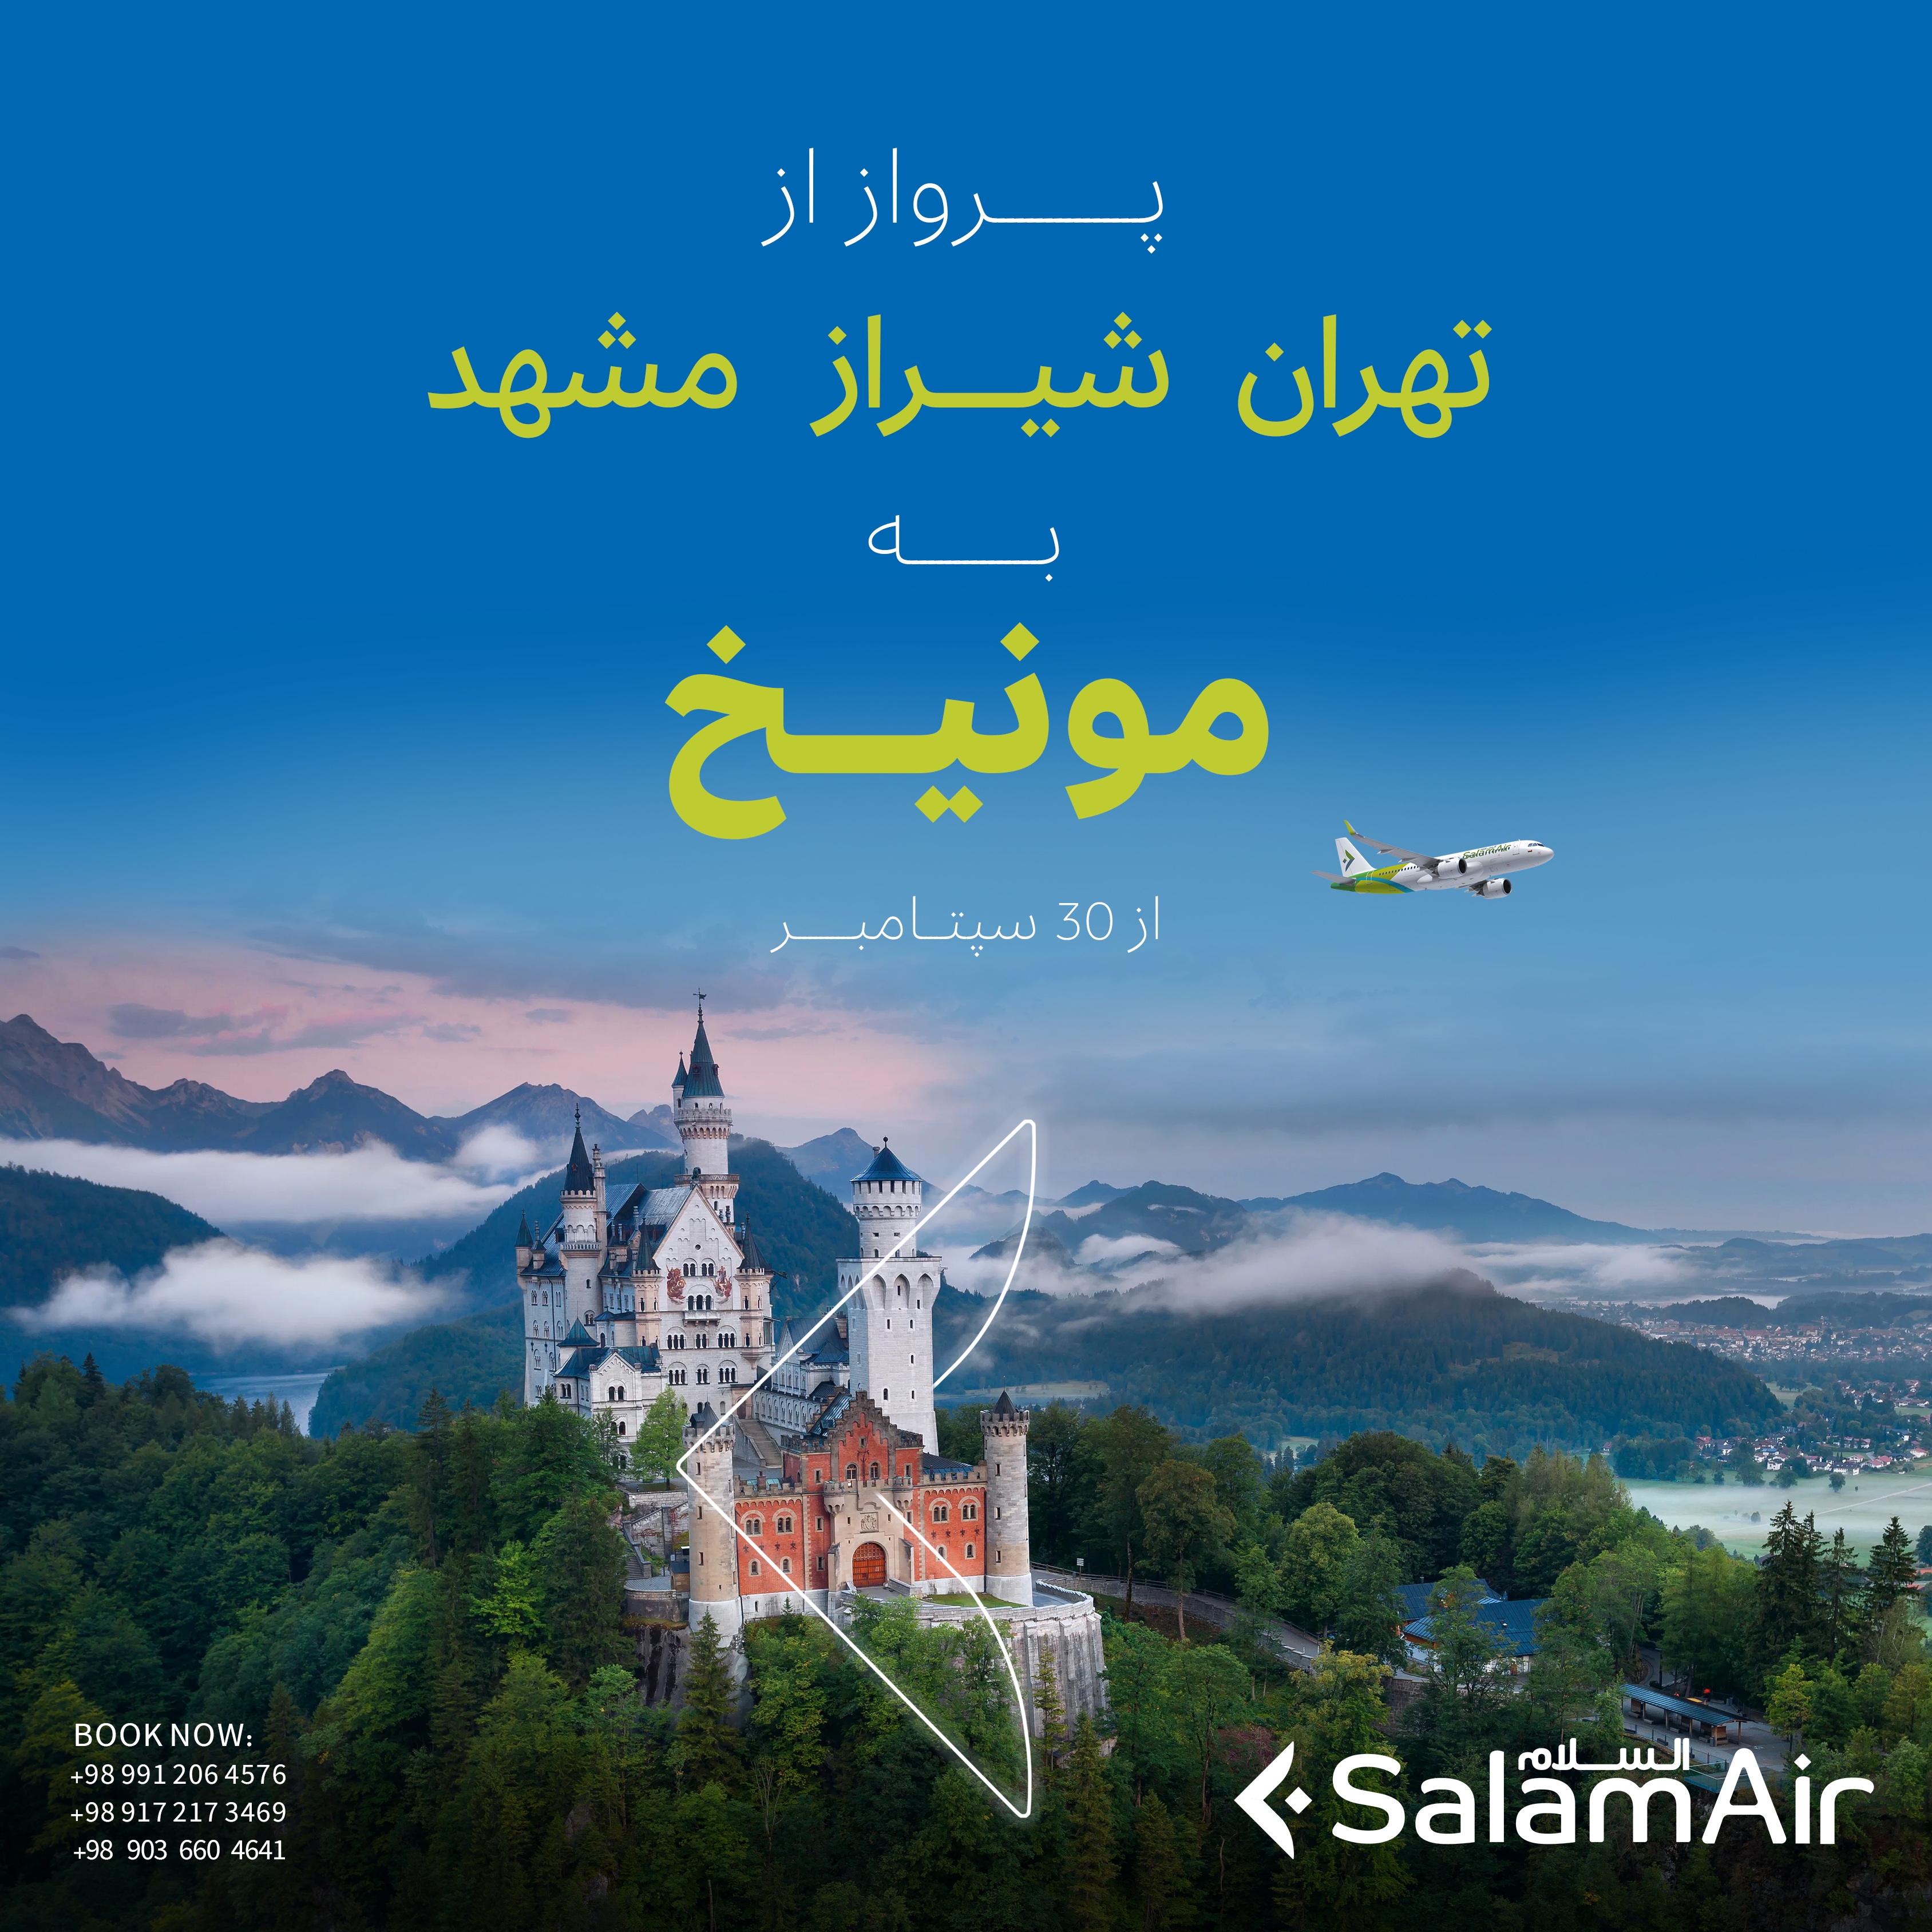 بخشنامه و اطلاعیه   هواپیمایی سلام ایر درباره تهران ، مشهد ، شیراز به مونیخ از 30 سپتامبر 